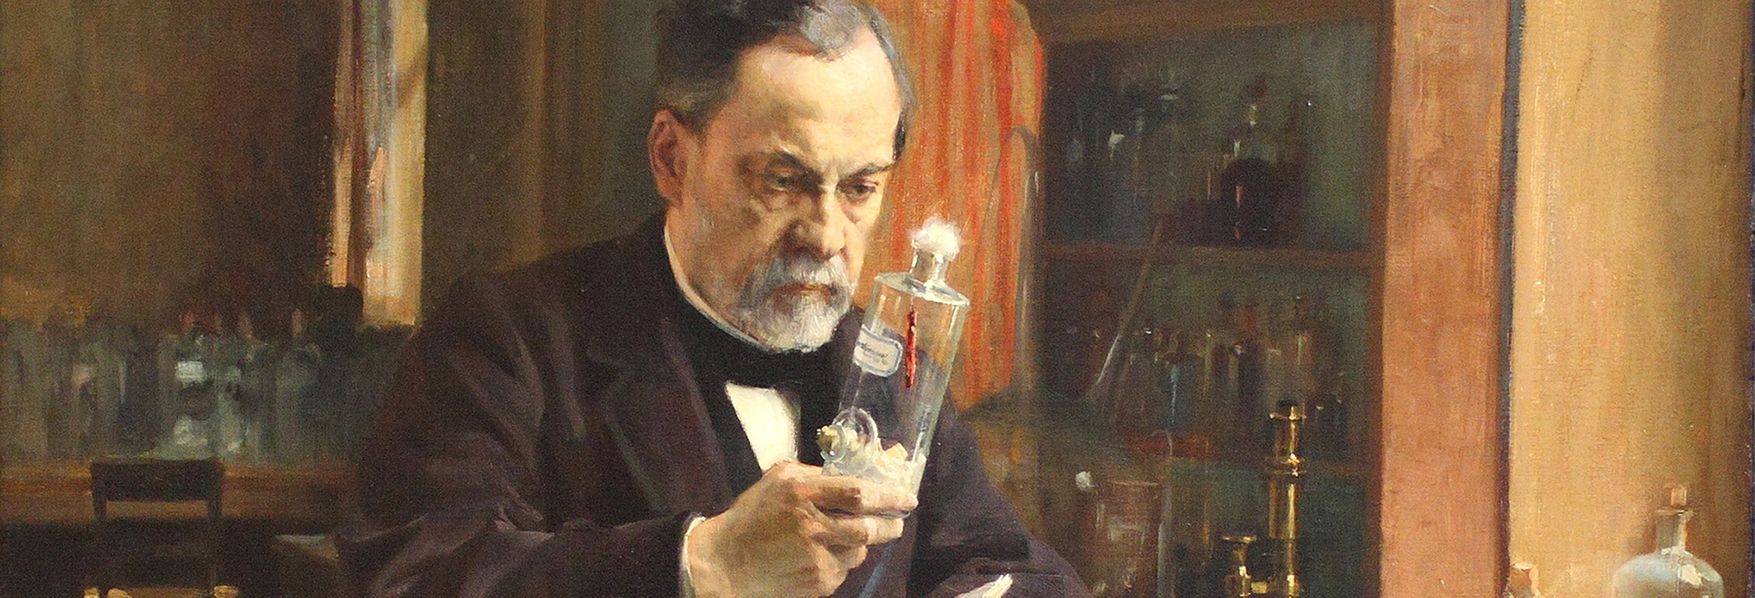 Louis Pasteur trabajando en el laboratorio de la École Normale Supérieur de París. Pintura al óleo de Albert G. A. Edelfelt.